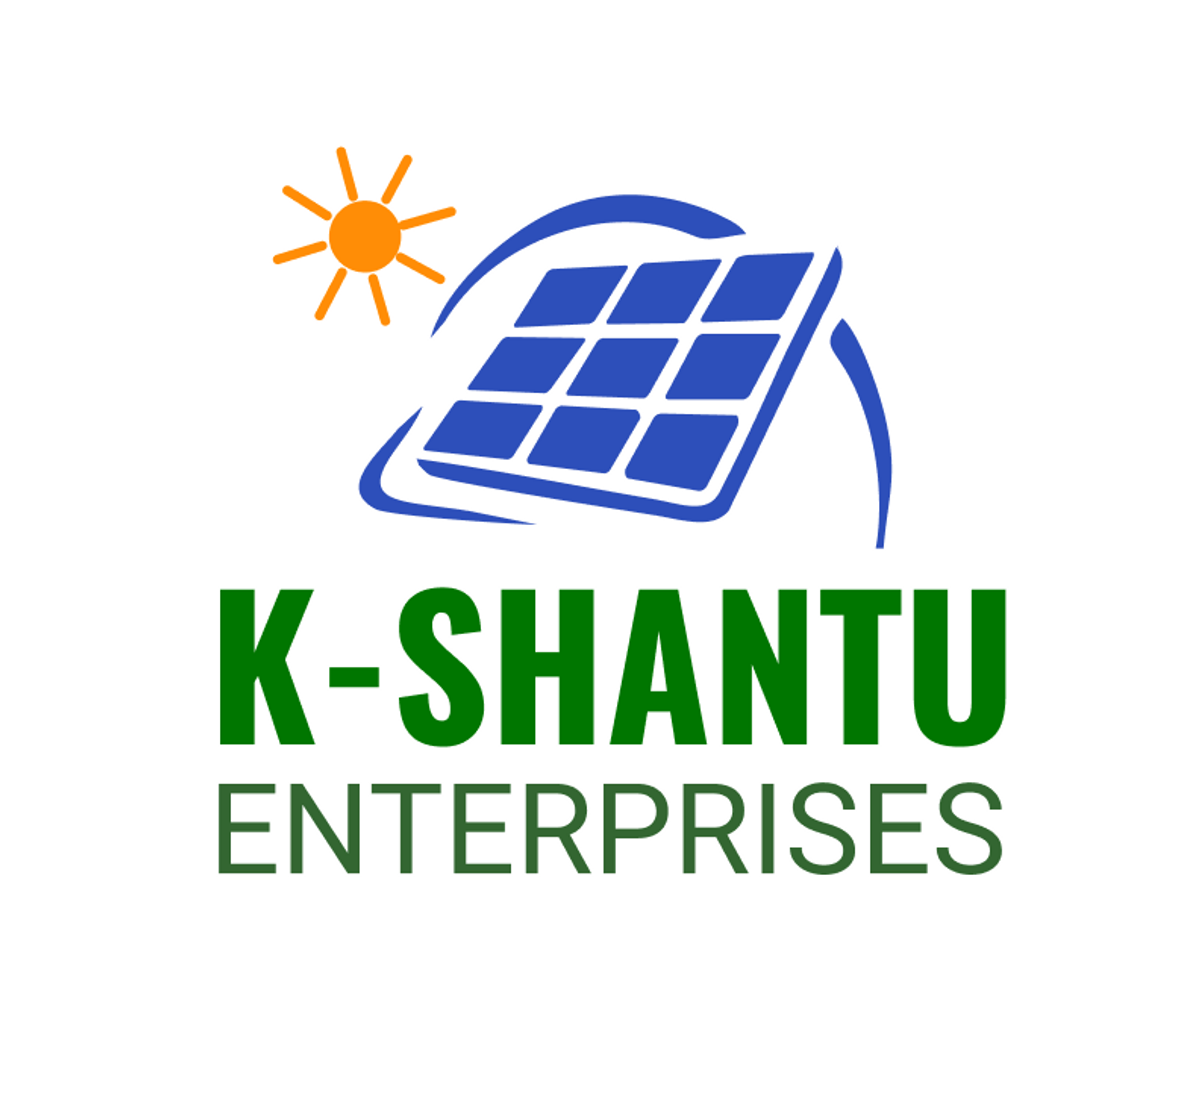 K-Shantu Enterprises